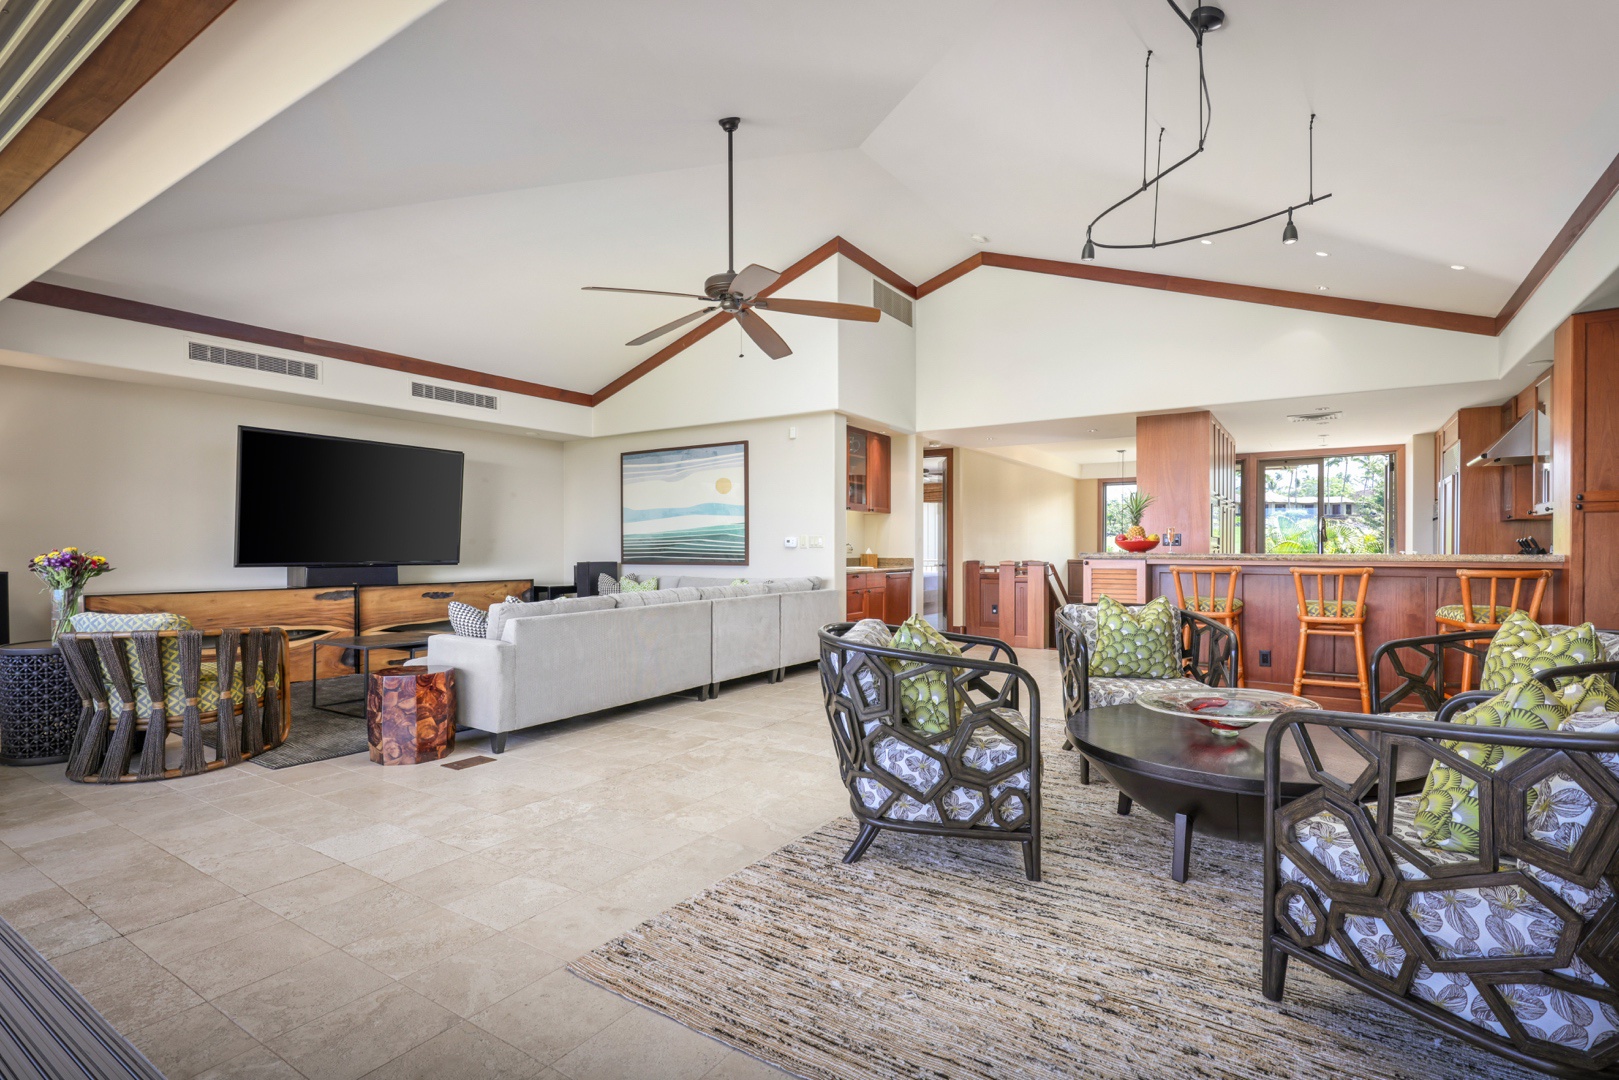 Kailua Kona Vacation Rentals, 3BD Ke Alaula Villa (210B) at Four Seasons Resort at Hualalai - View into the interior toward the kitchen.